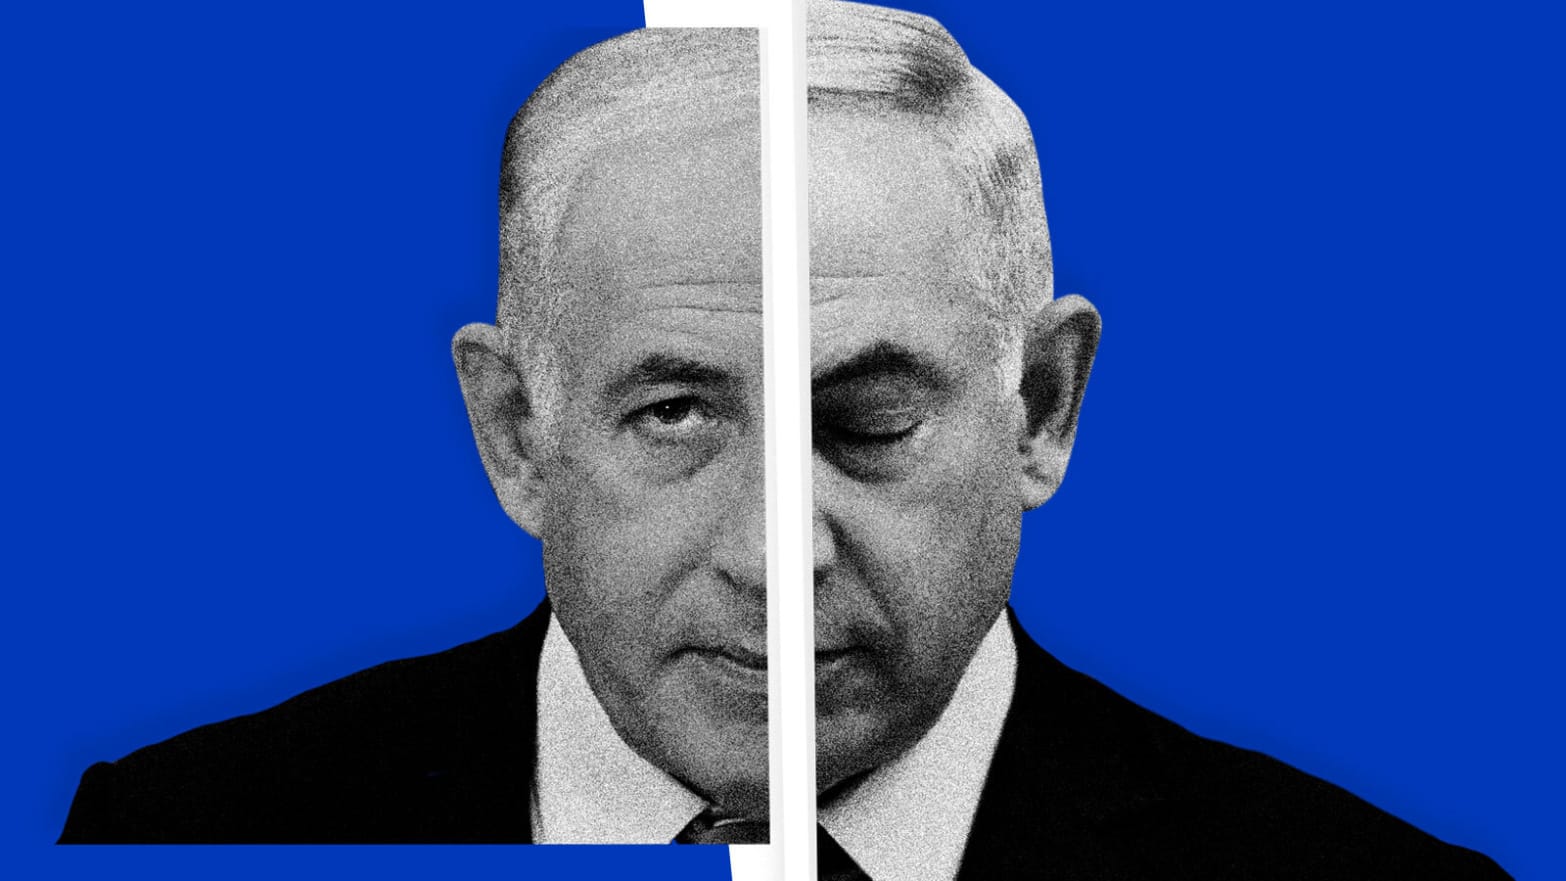 Benjamin Netanyahu Prime Minister of Israel